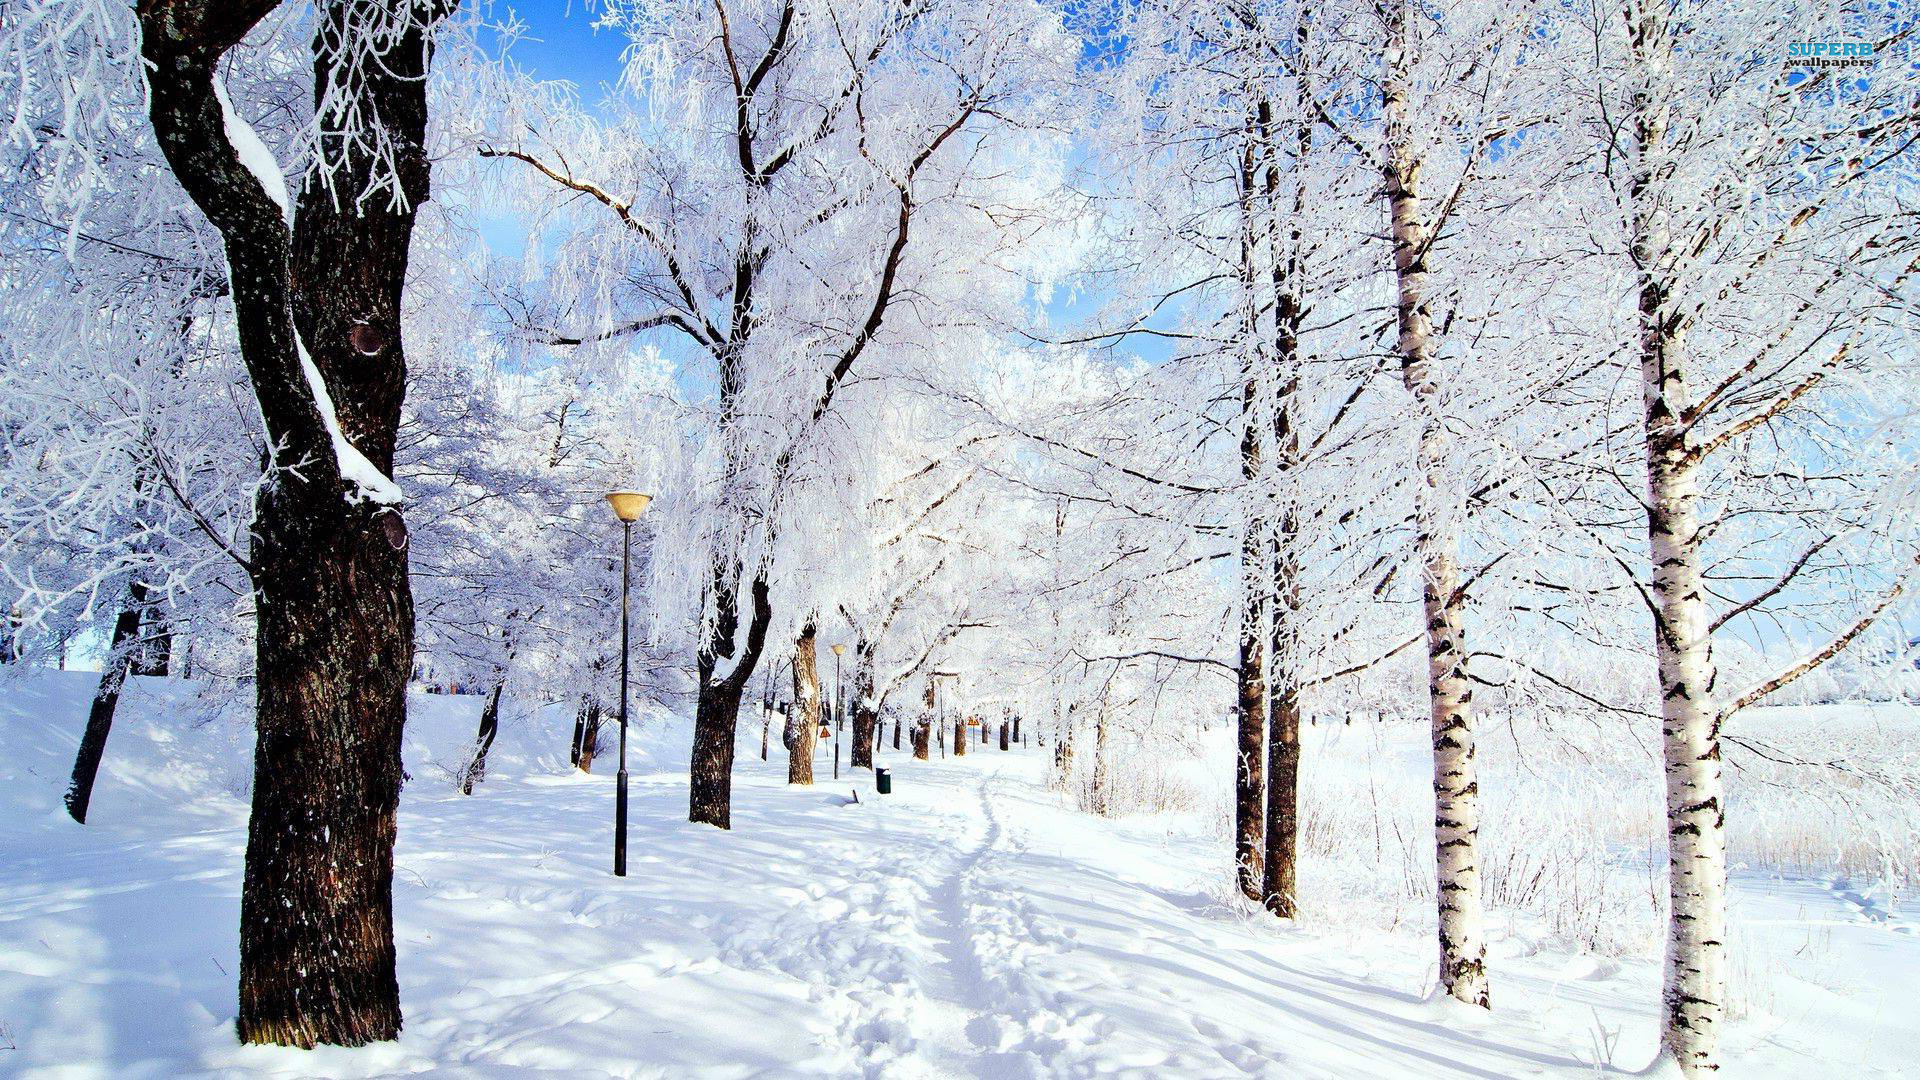 Winter Scenery - Random Photo (35926791) - Fanpop